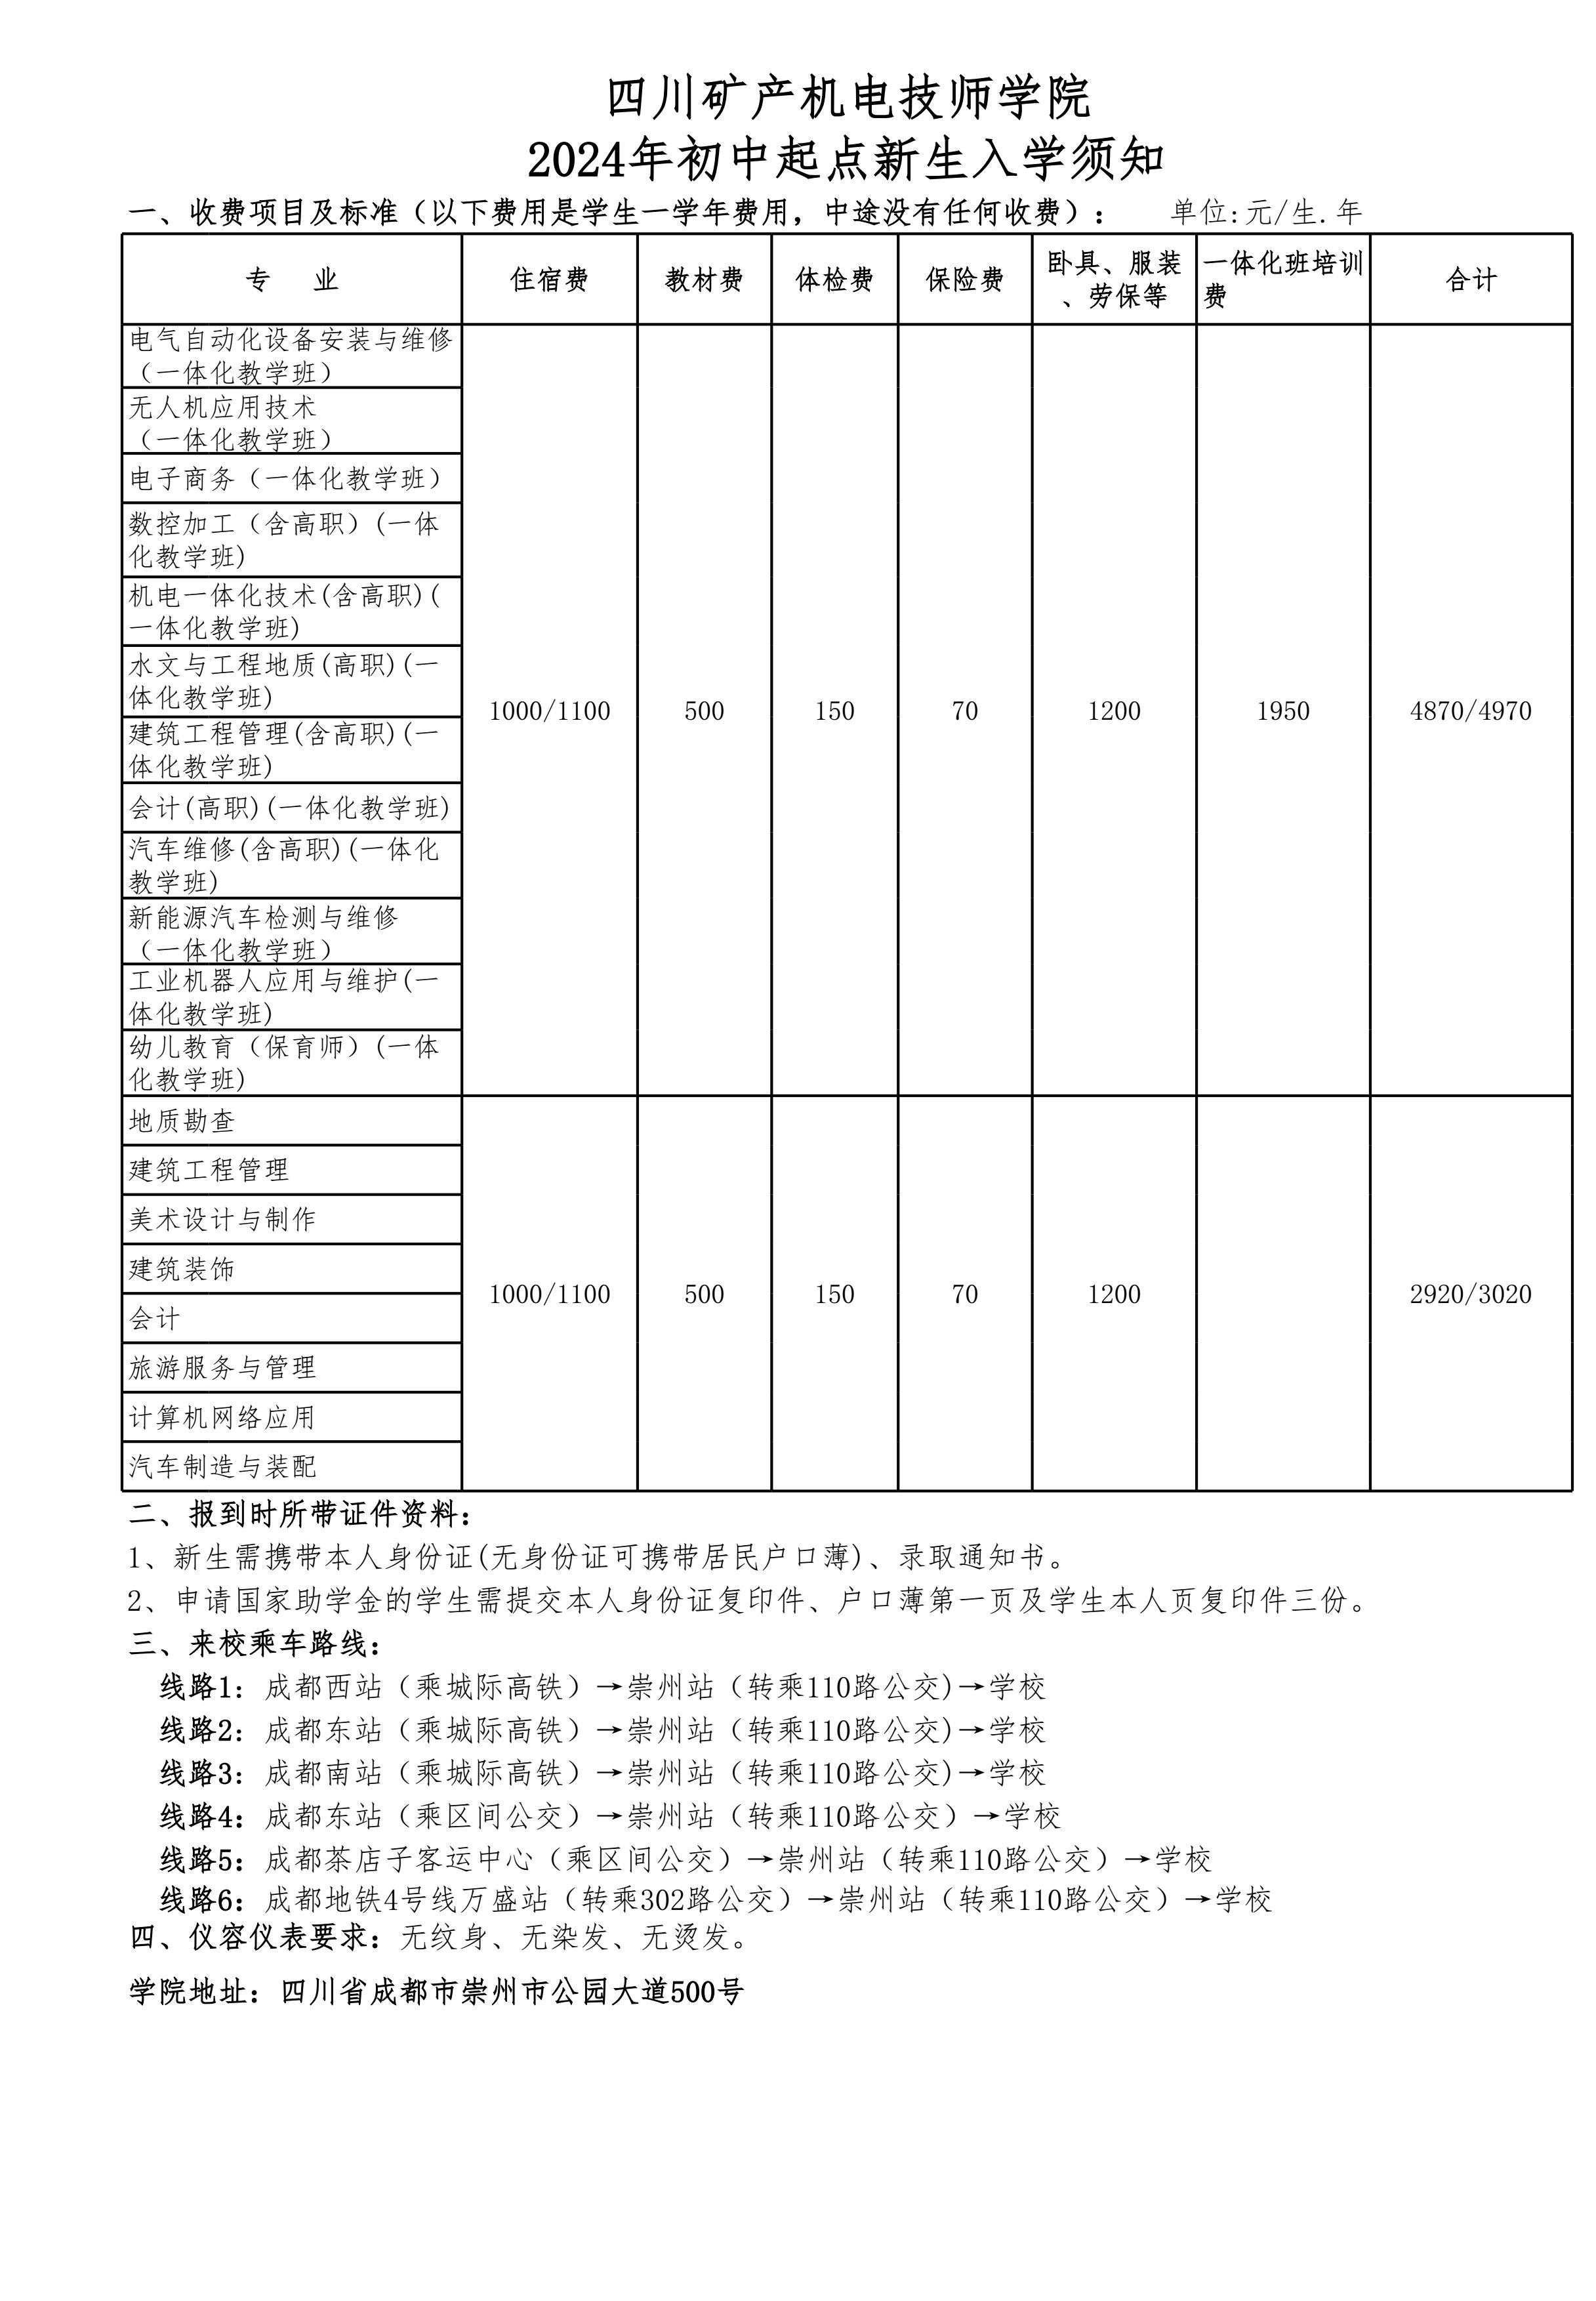 四川矿产机电技师学院2024年初中起点新生入学须知